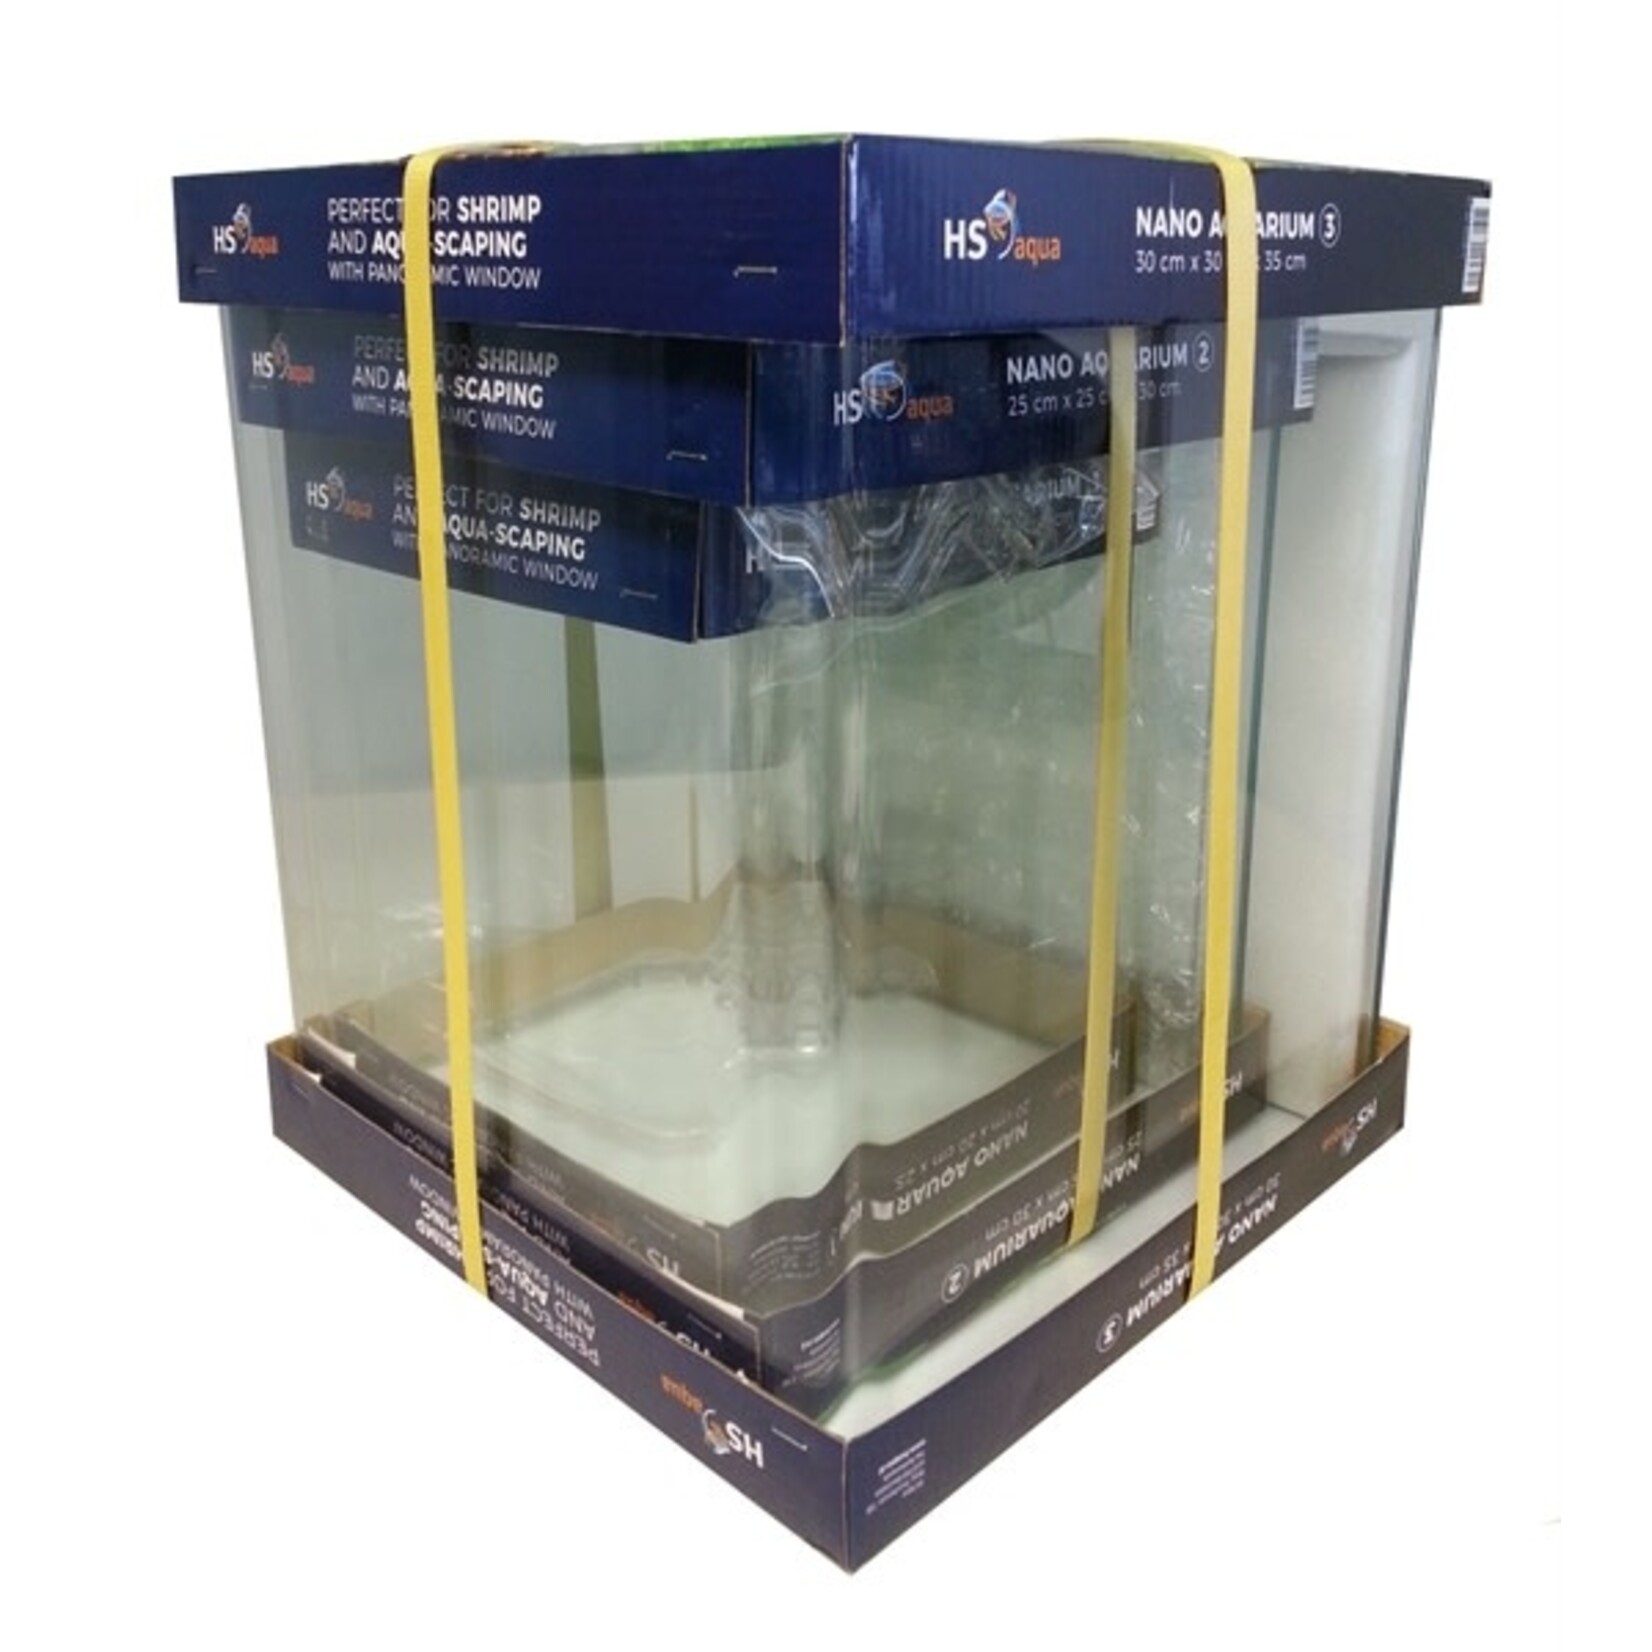 HS Aqua Aquarium volglas quadro cube set no. 1,2,3